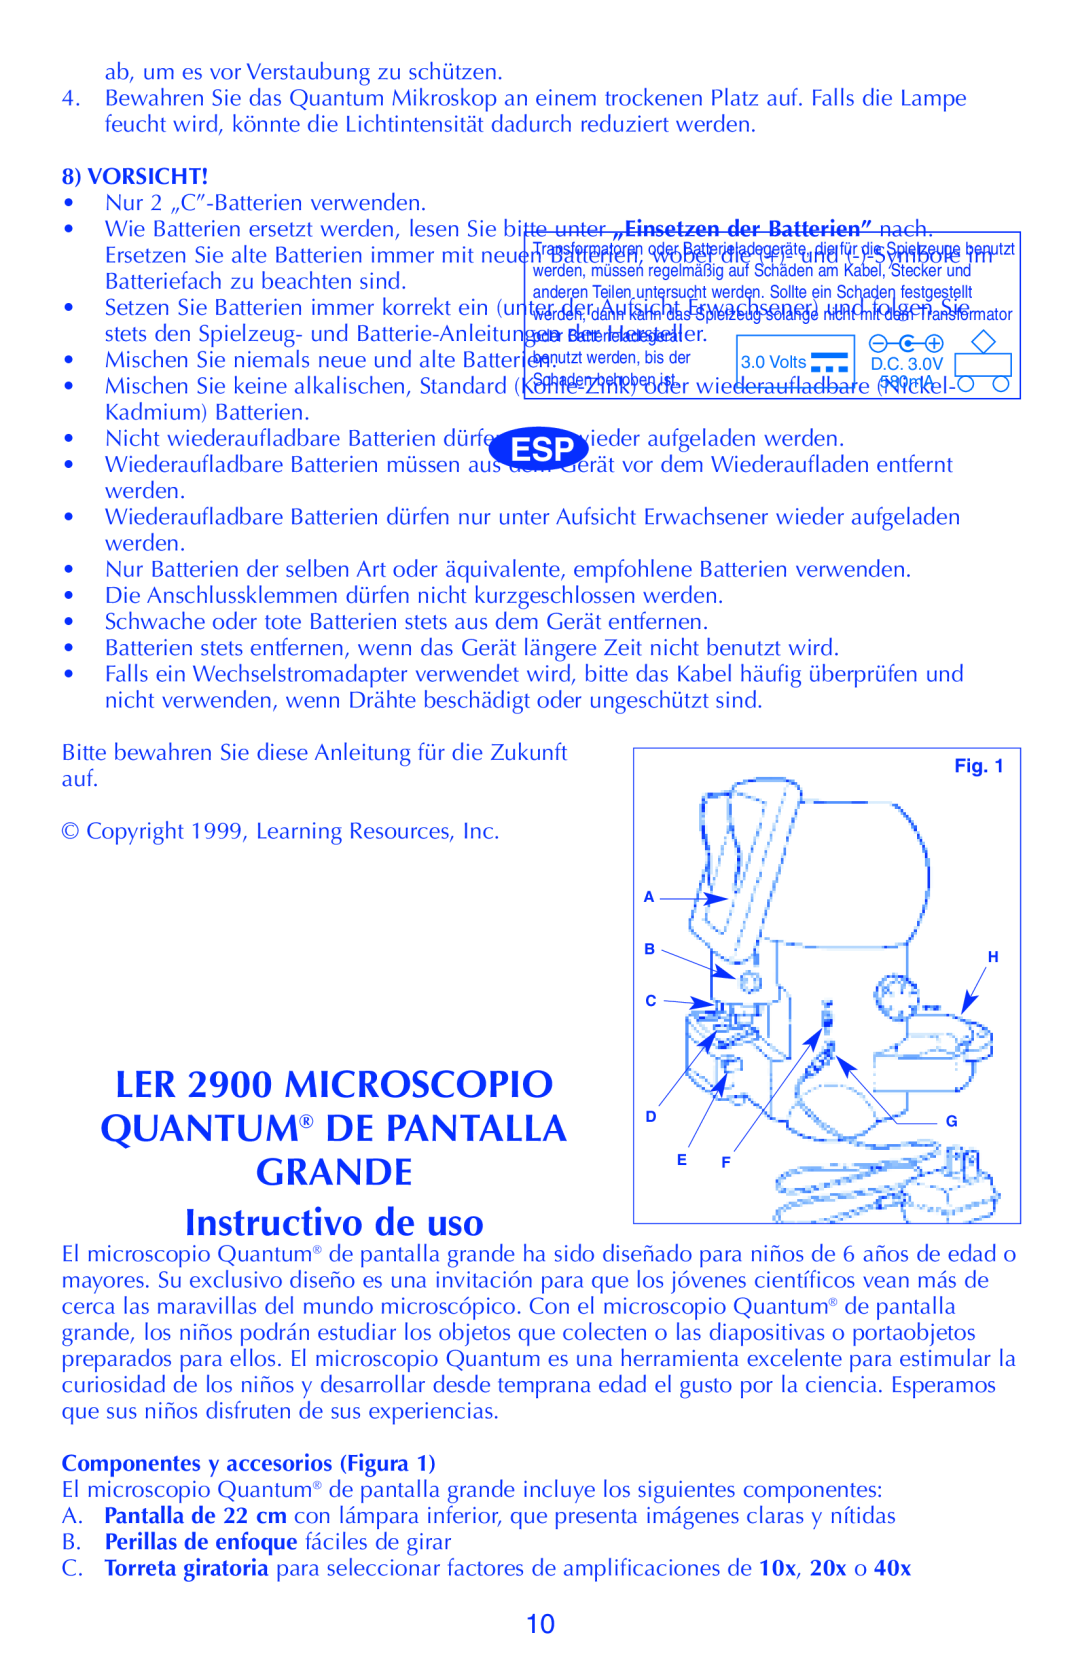 Quantum LER 2900 Instructivo de uso, Vorsicht, Componentes y accesorios Figura, B. Perillas de enfoque fáciles de girar 